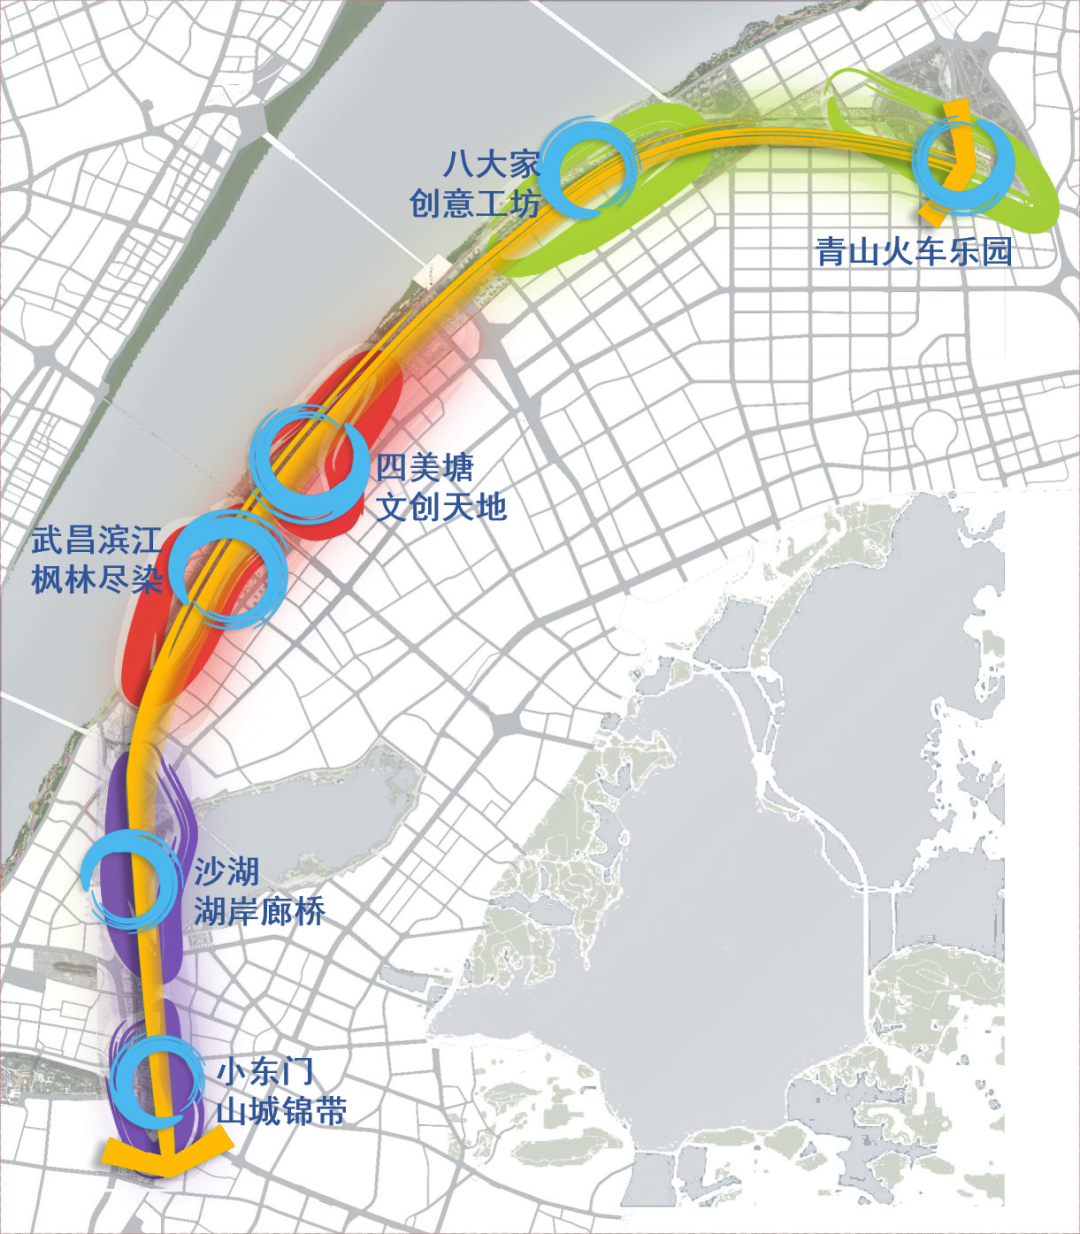 ▲武昌生态文化长廊六大区段规划结构图